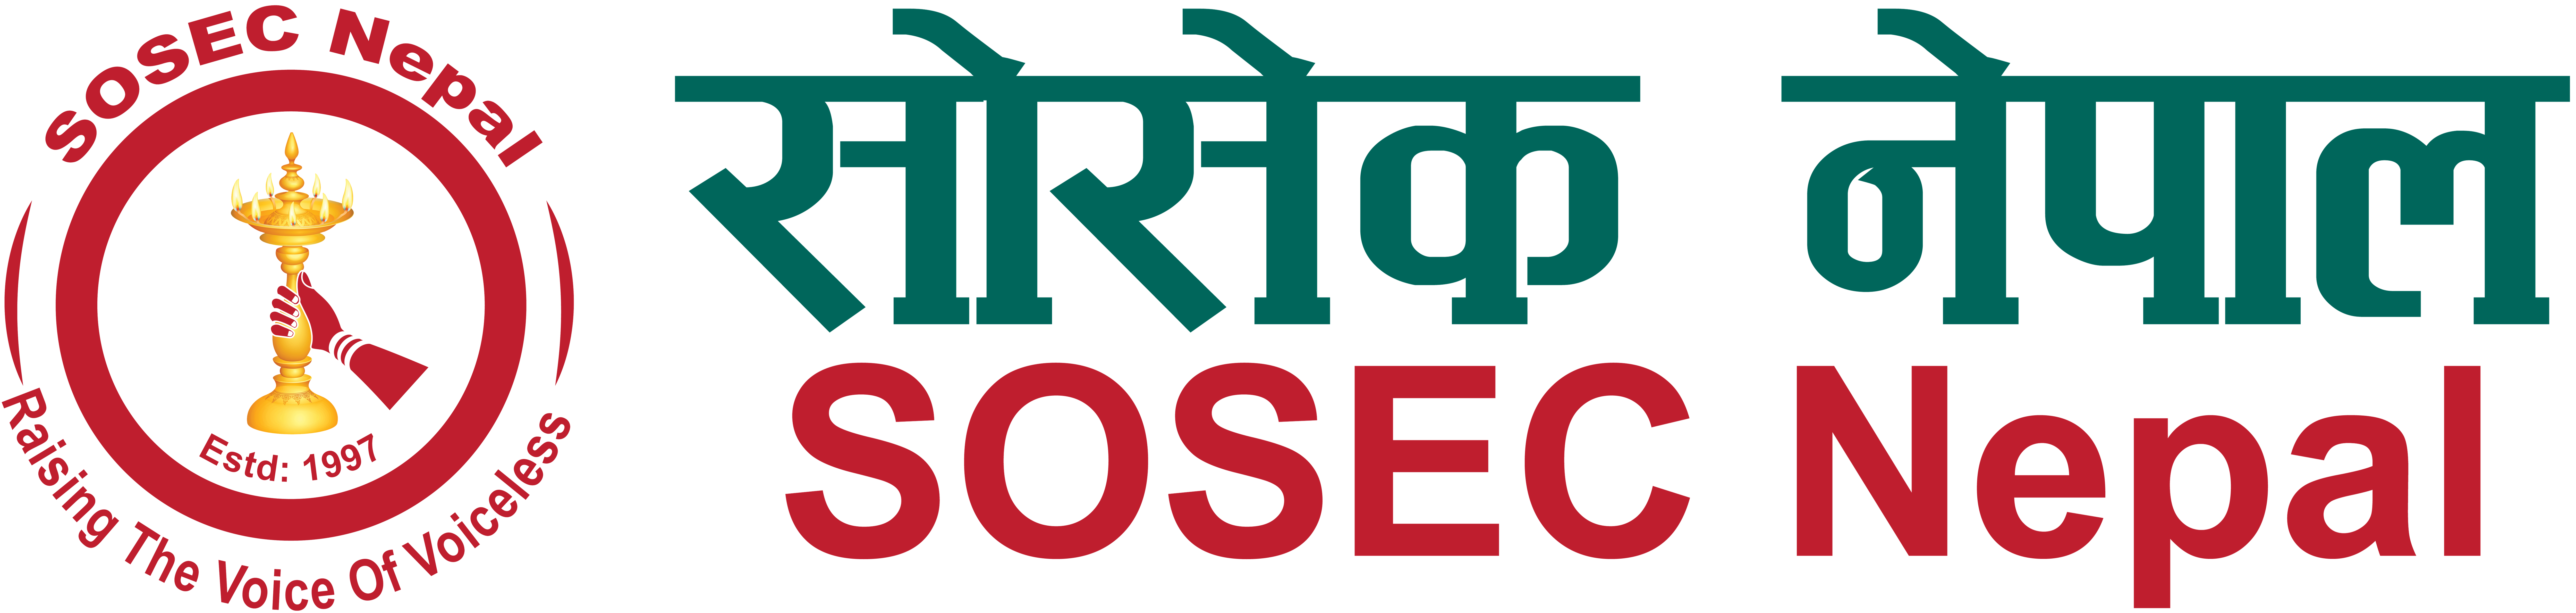 SOSEC, Nepal